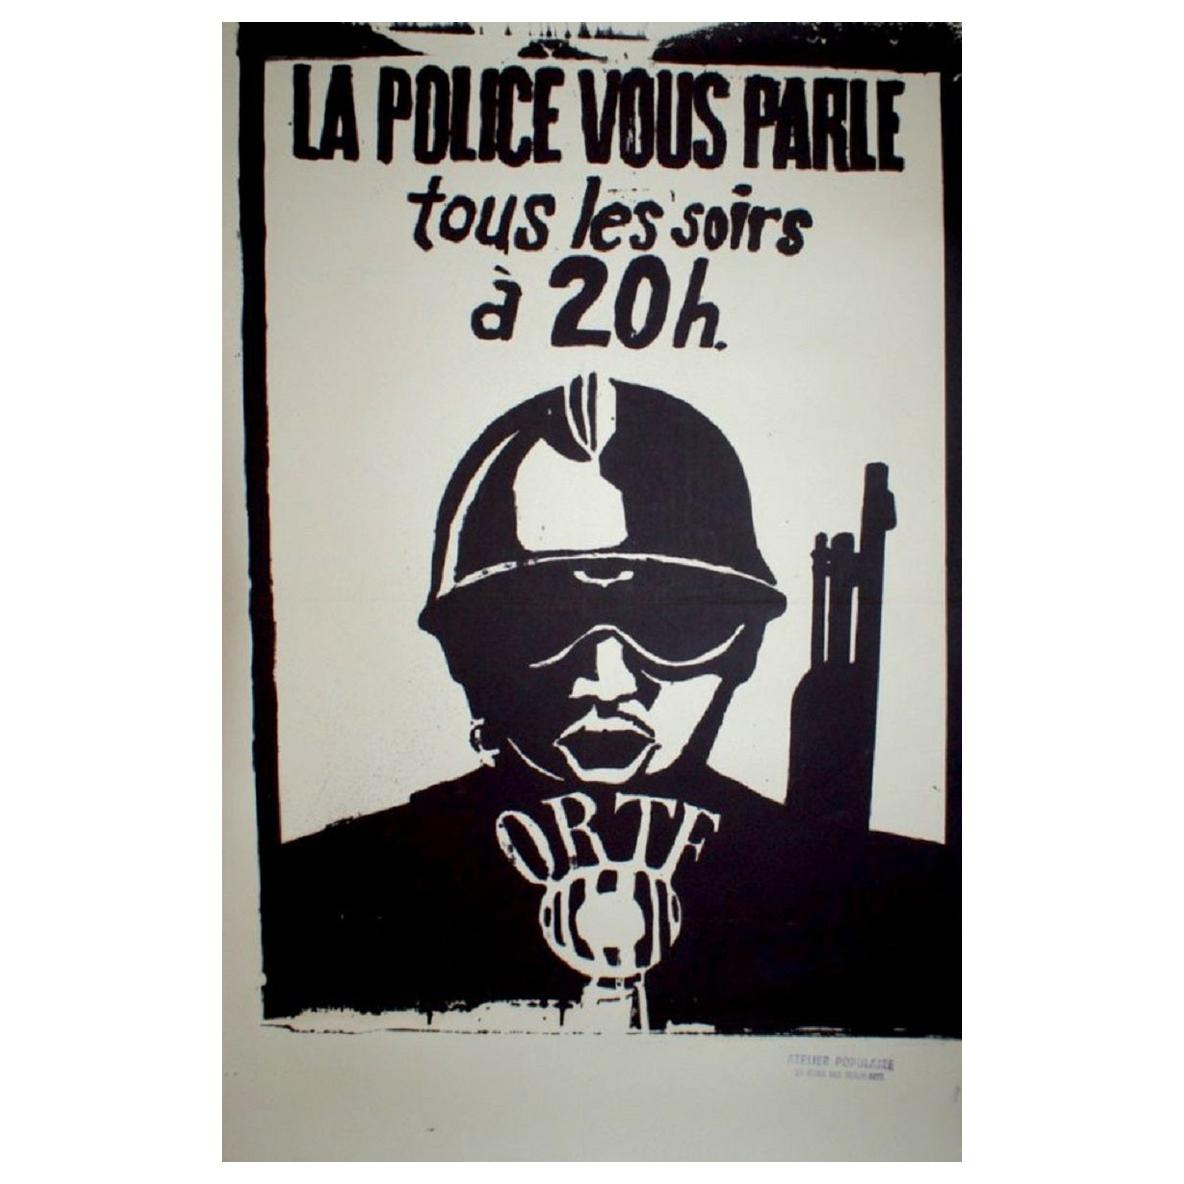 La Police Vous Parle Tous Les Soirs À 20 H May 1968 Original Vintage Poster